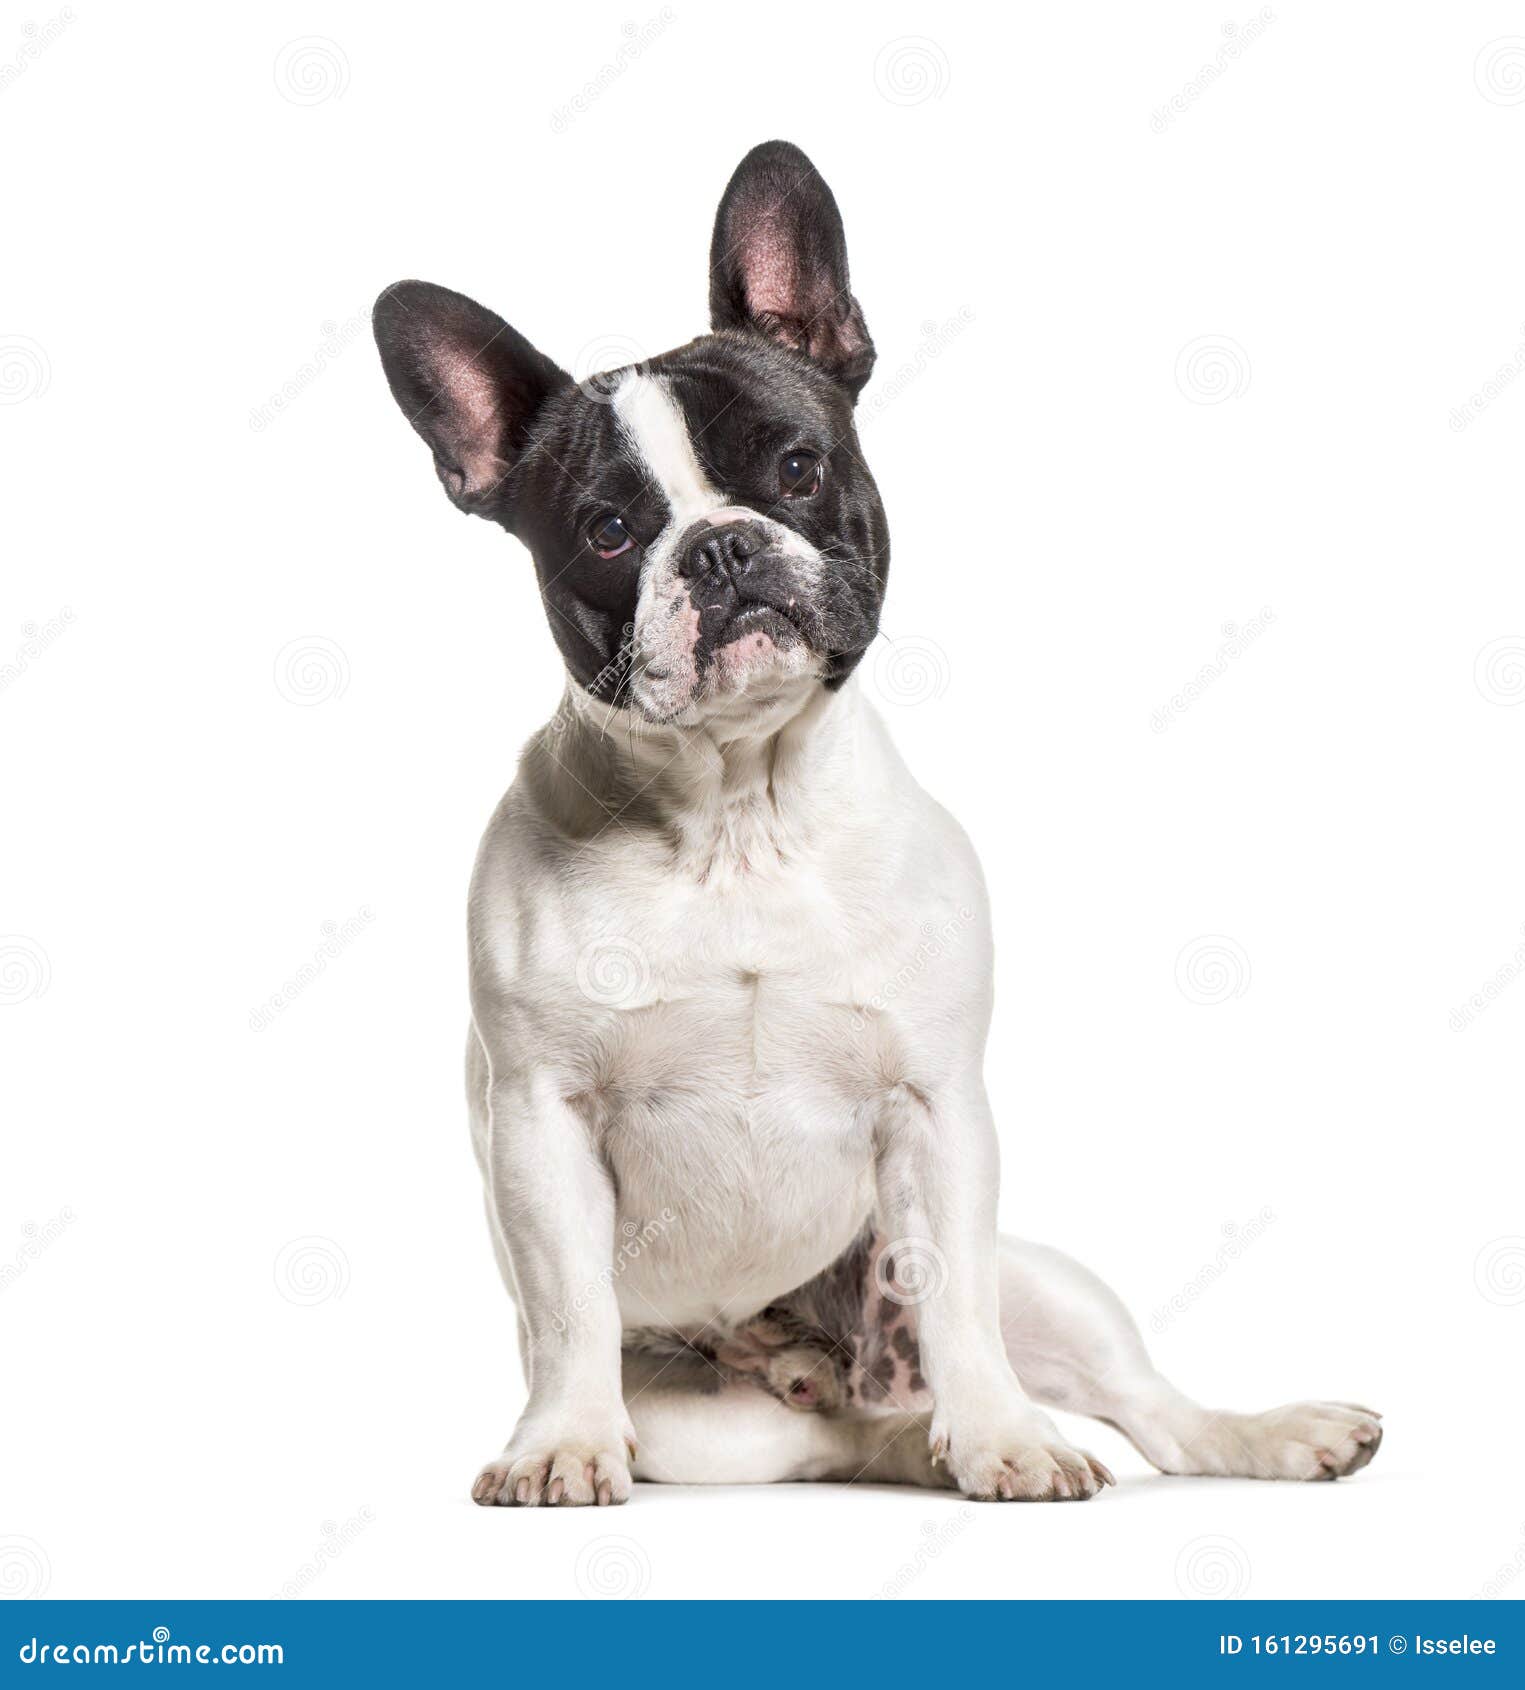 French Bulldog Sitting Against White Background Stock Image - Image of ...